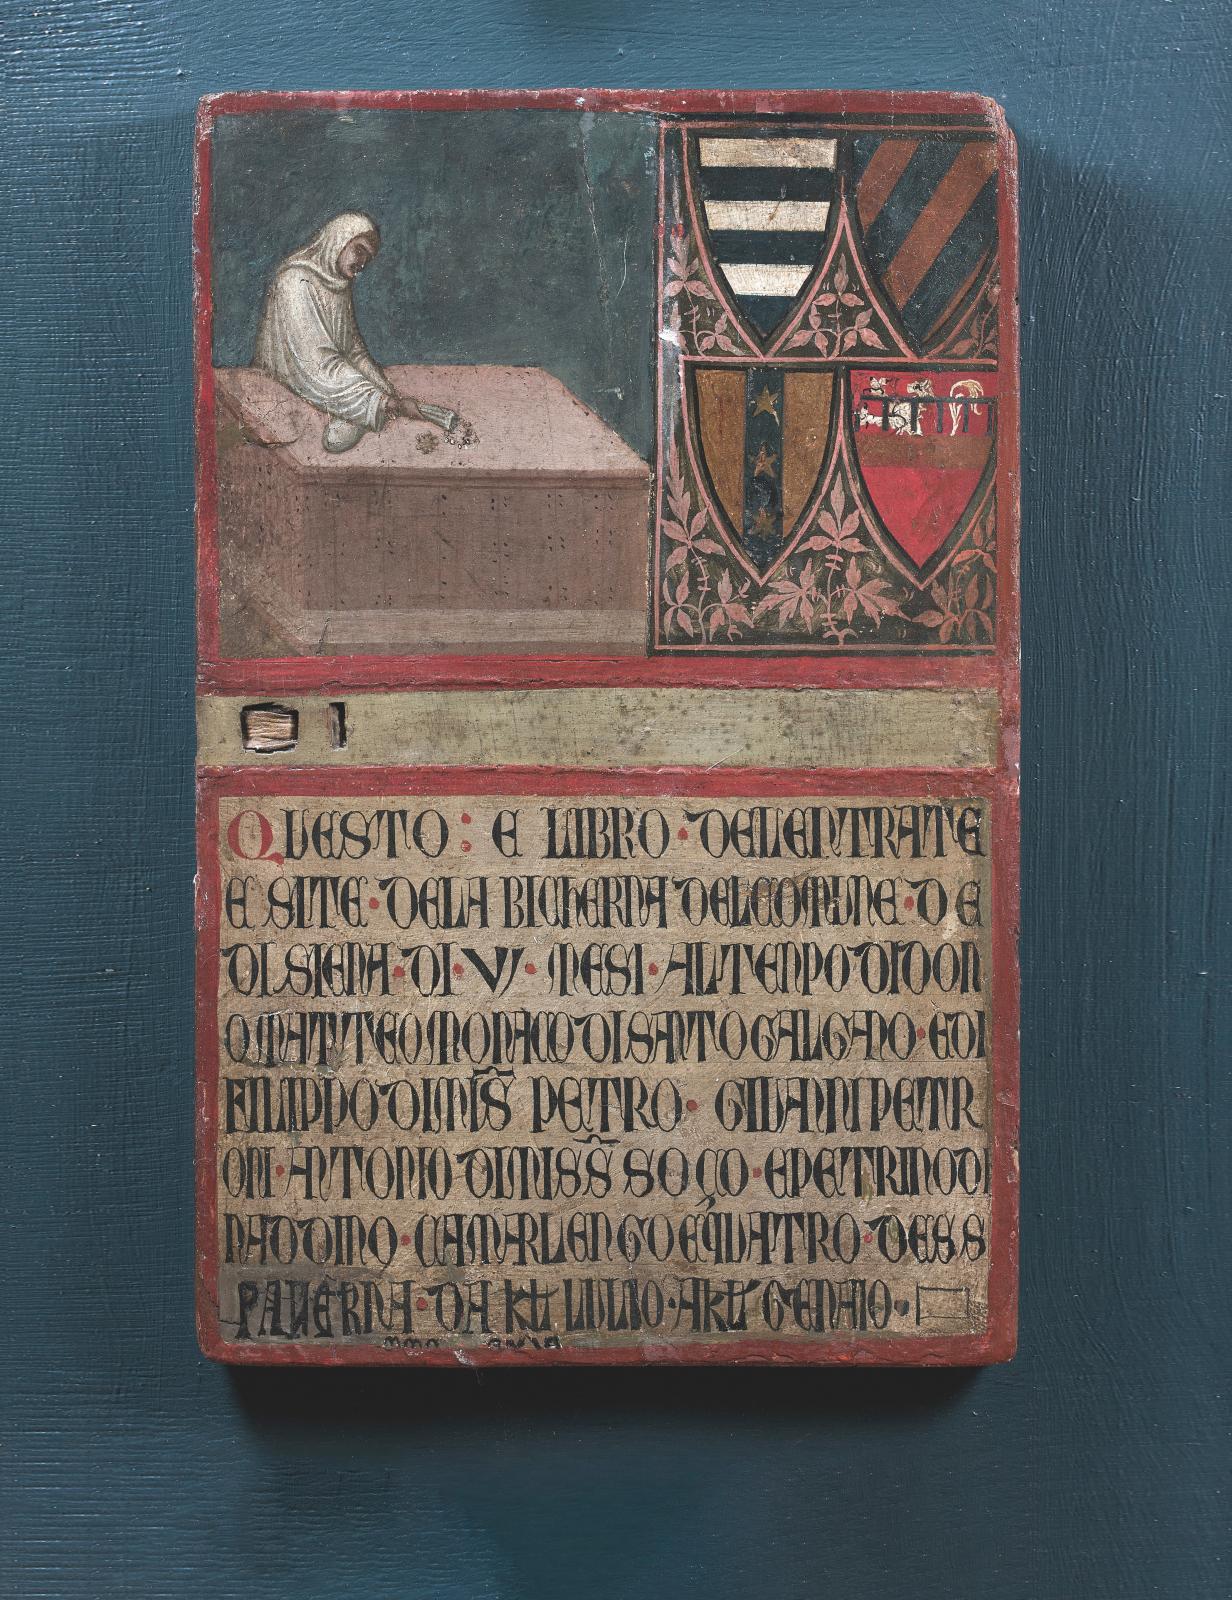 Une peinture siennoise de l’école d’Ambrogio Lorenzetti